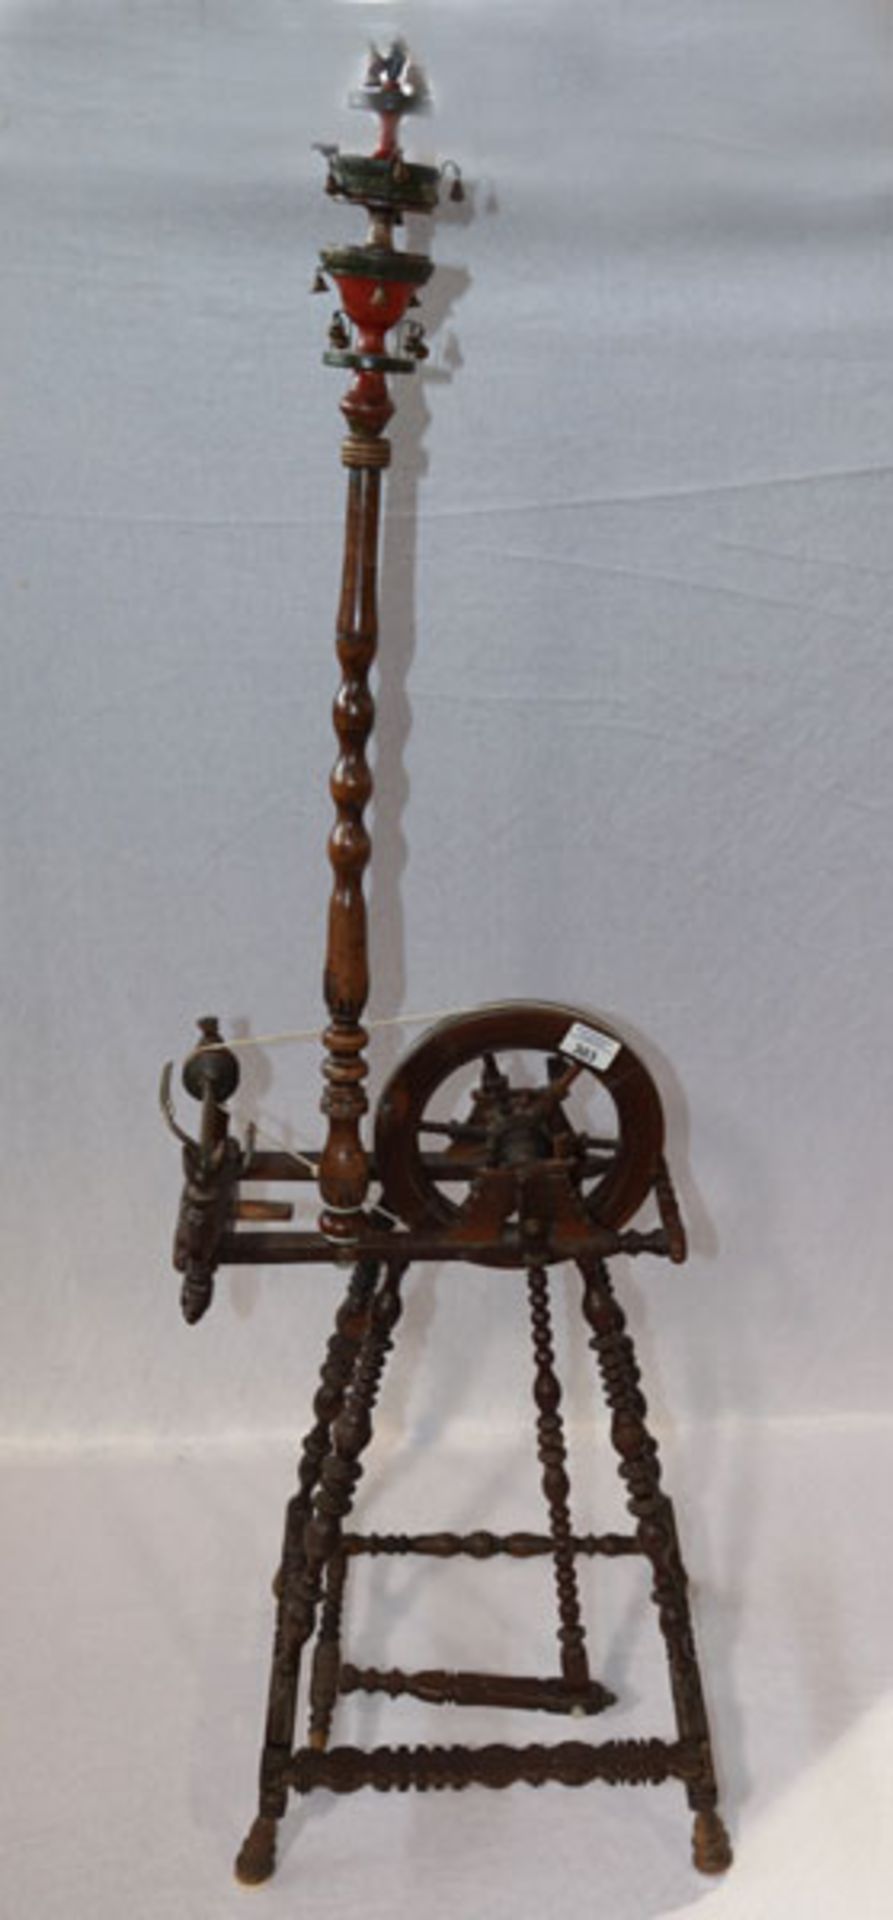 Holz Spinnrad, gedrechselt, wohl komplett, H 120 cm, B 37 cm, T 36 cm, Gebrauchsspuren, teils